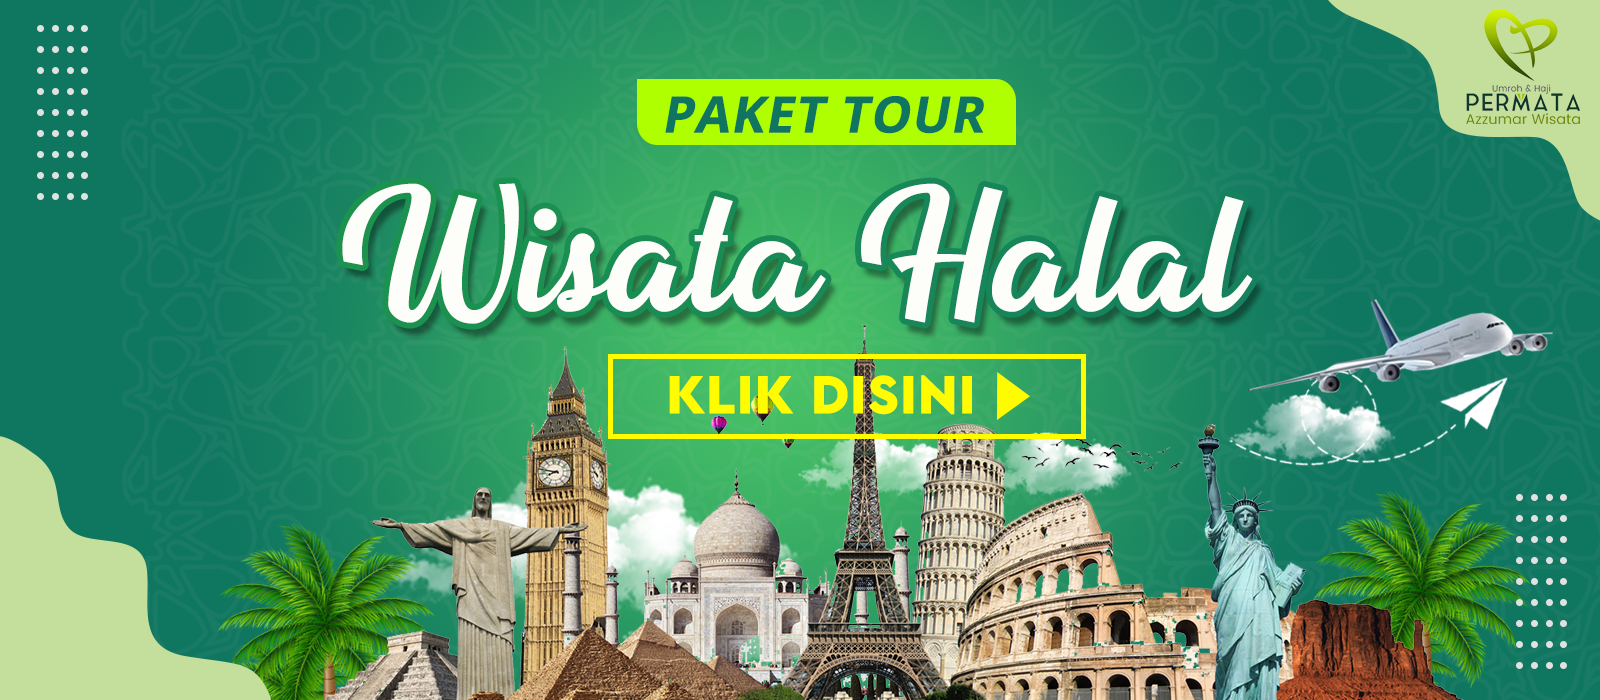 paket tour wisata halal